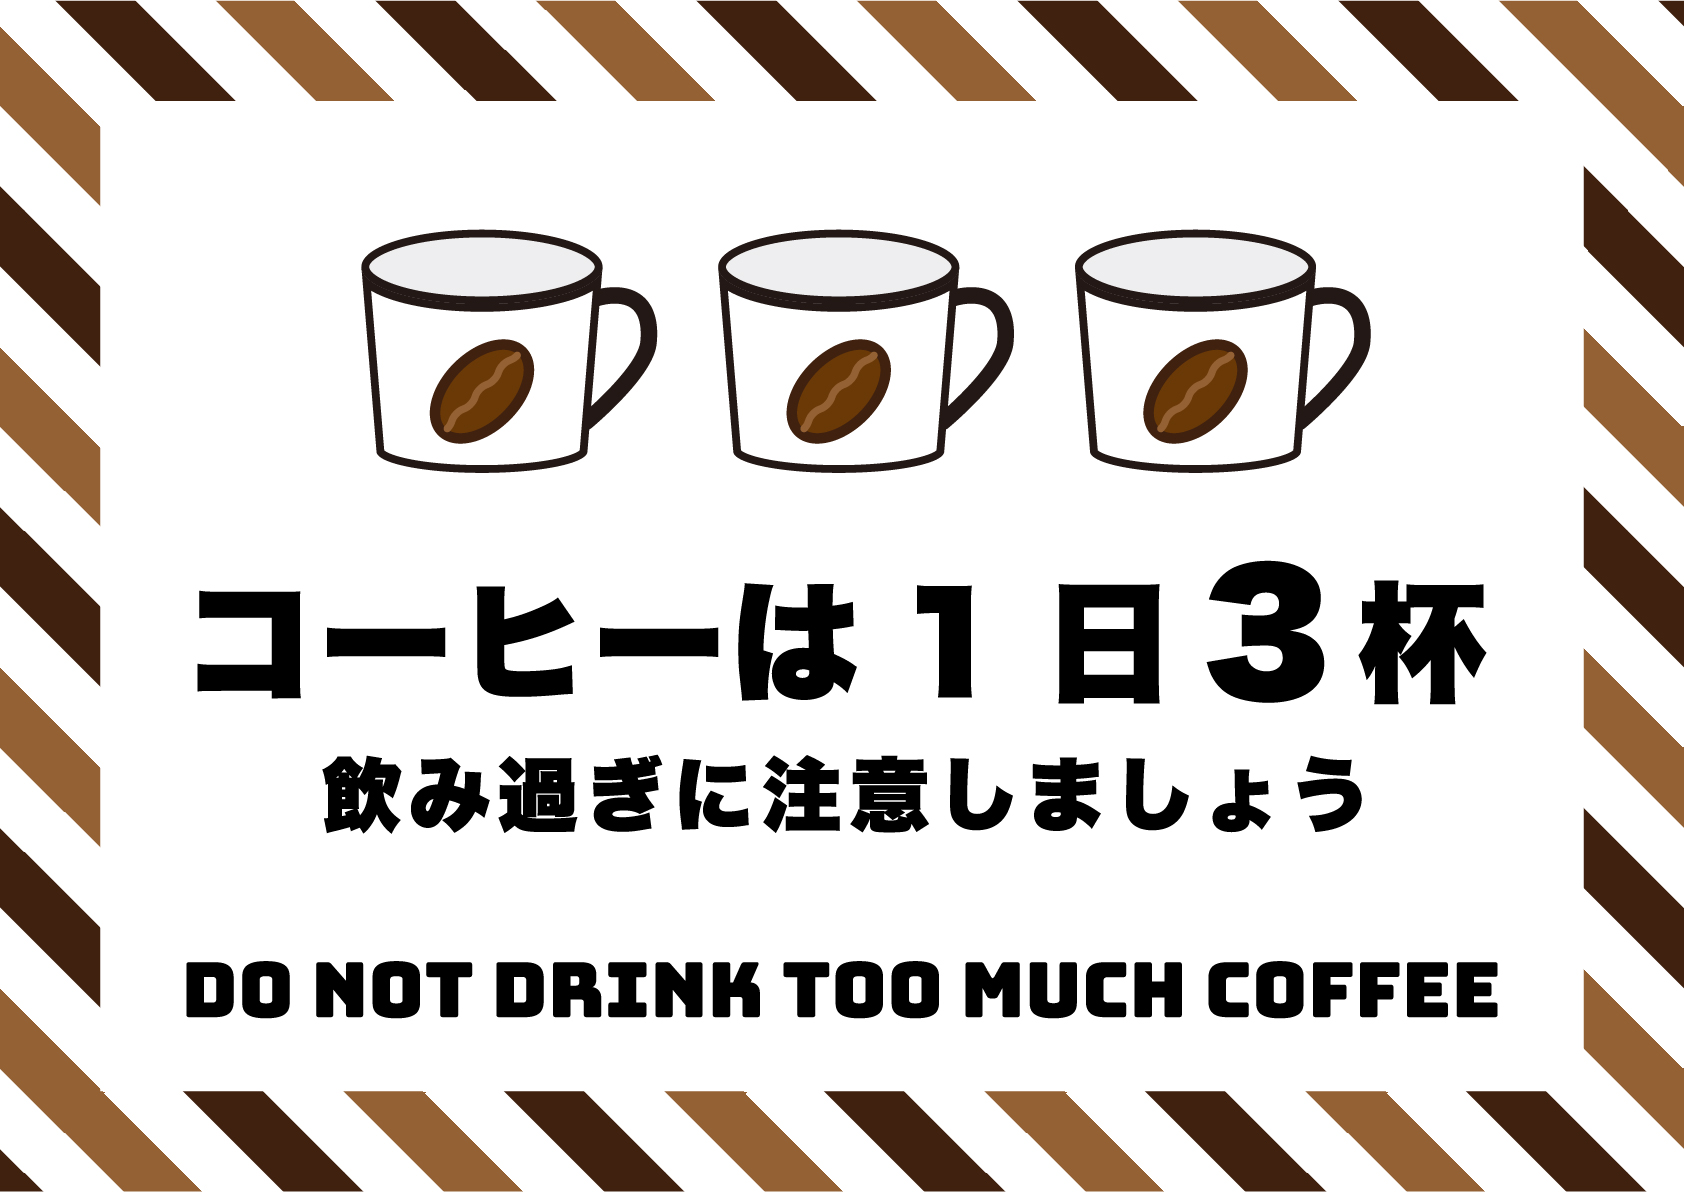 コーヒー飲みすぎ注意（3杯）の張り紙